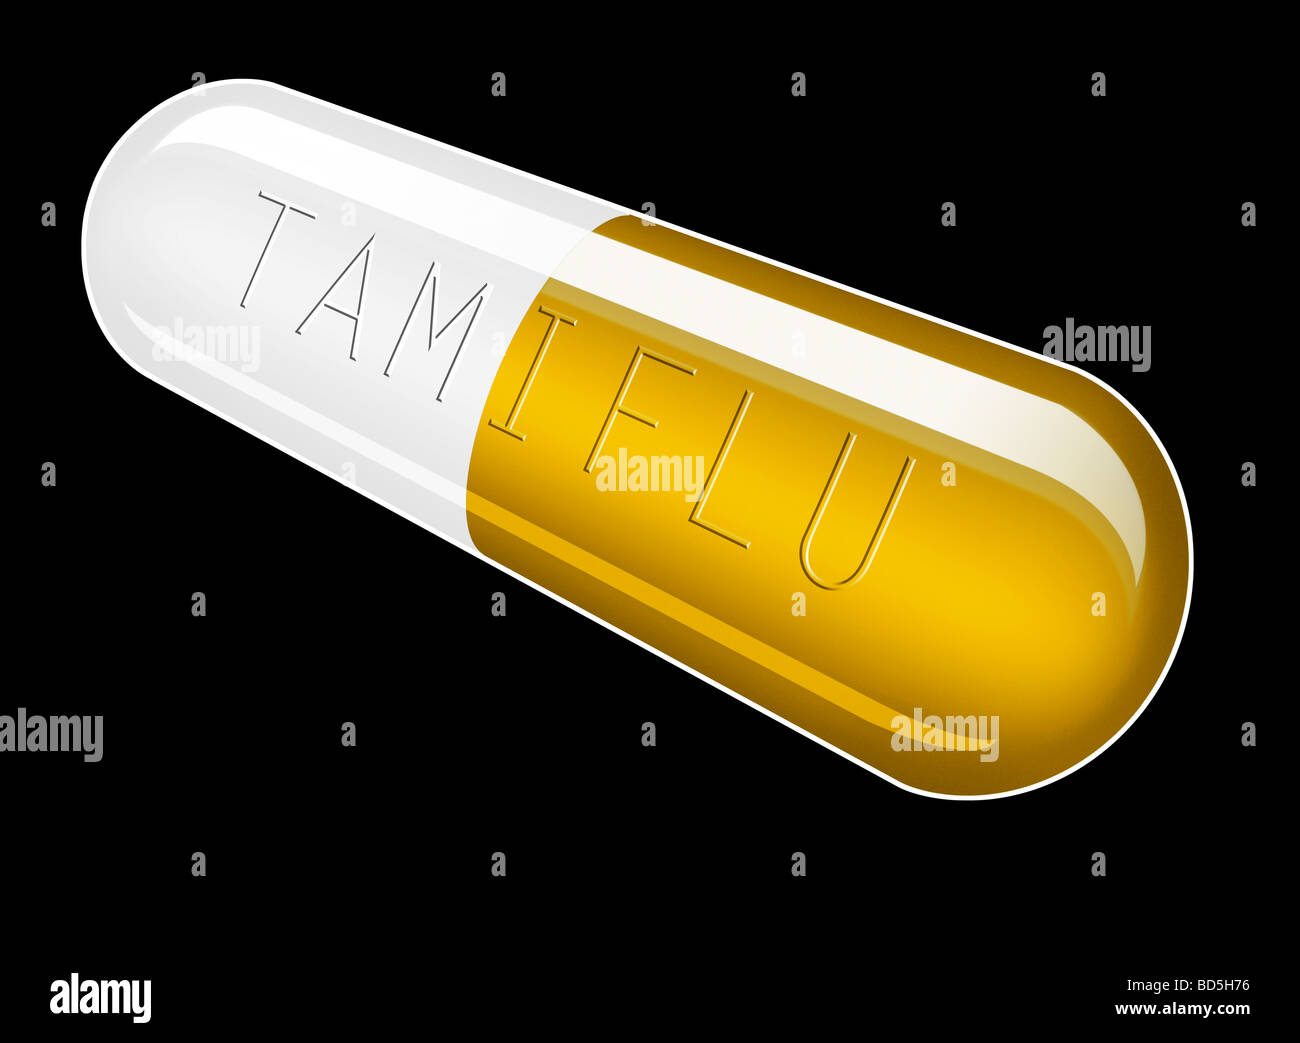 Illustrazione grafica di un singolo Tamiflu capsule su uno sfondo nero con tamiflu goffrato attraverso la capsula Foto Stock